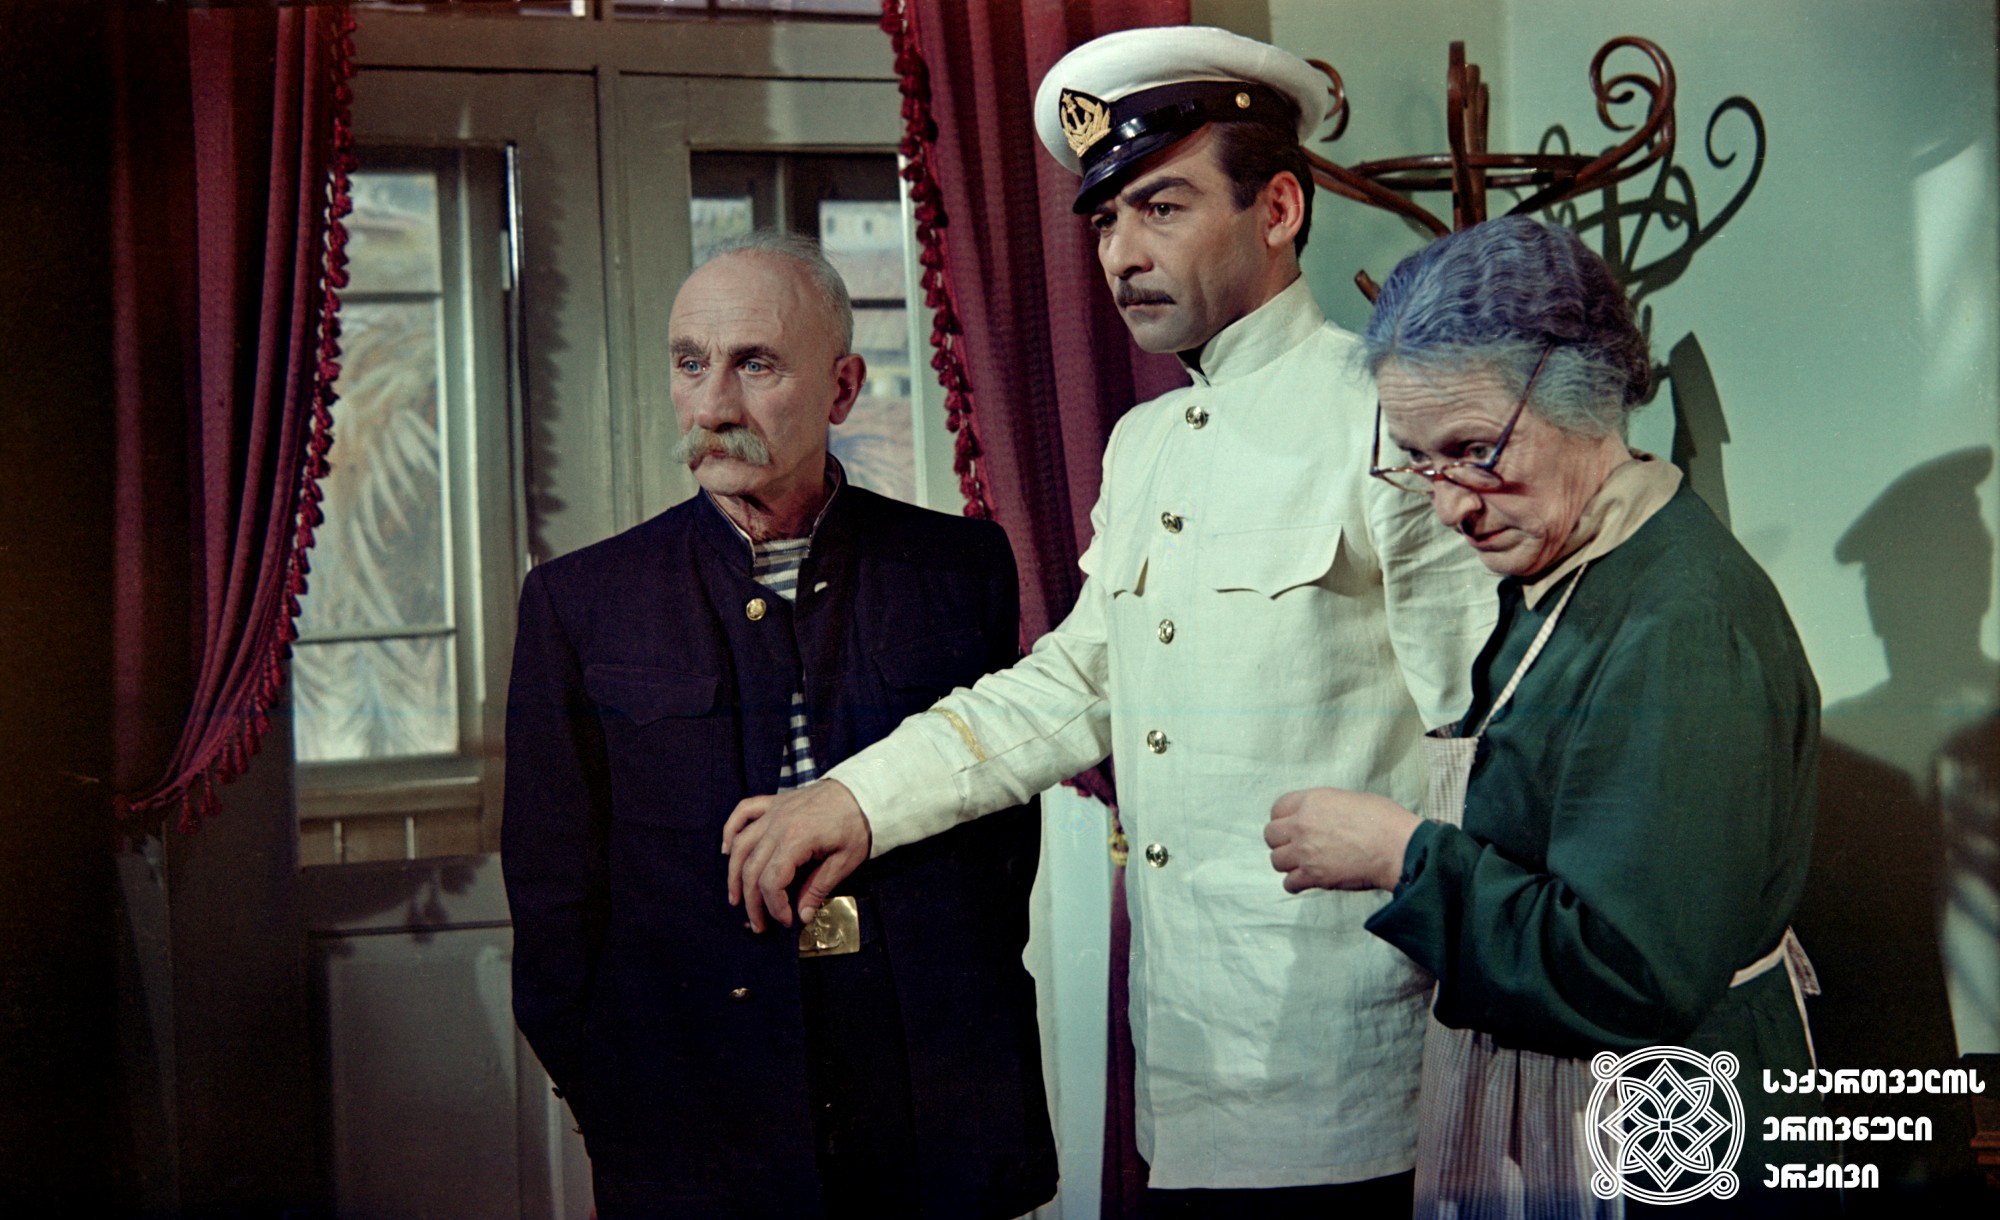 ბებია - სესილია თაყაიშვილი, ბაბუა - სანდრო ჟორჟოლიანი, მამა - იაკობ ტრიპოლსკი. მხატვრული ფილმი „მანანა”. კინოსტუდია „ქართული ფილმი”, რეჟისორები: ზაქარია გუდავაძე, შალვა მარტაშვილი. <br>
1958 წელი. 
<br>
Grandmother – Sesilia Takaishvili, Grandfather – Sandro Zhorzholiani, father - Iakob Tripolski. Feature film “Manana”. Film Studio “Georgian Film”, Directors: Zaqaria Gudavadze, Shalva Martashvili. 1958